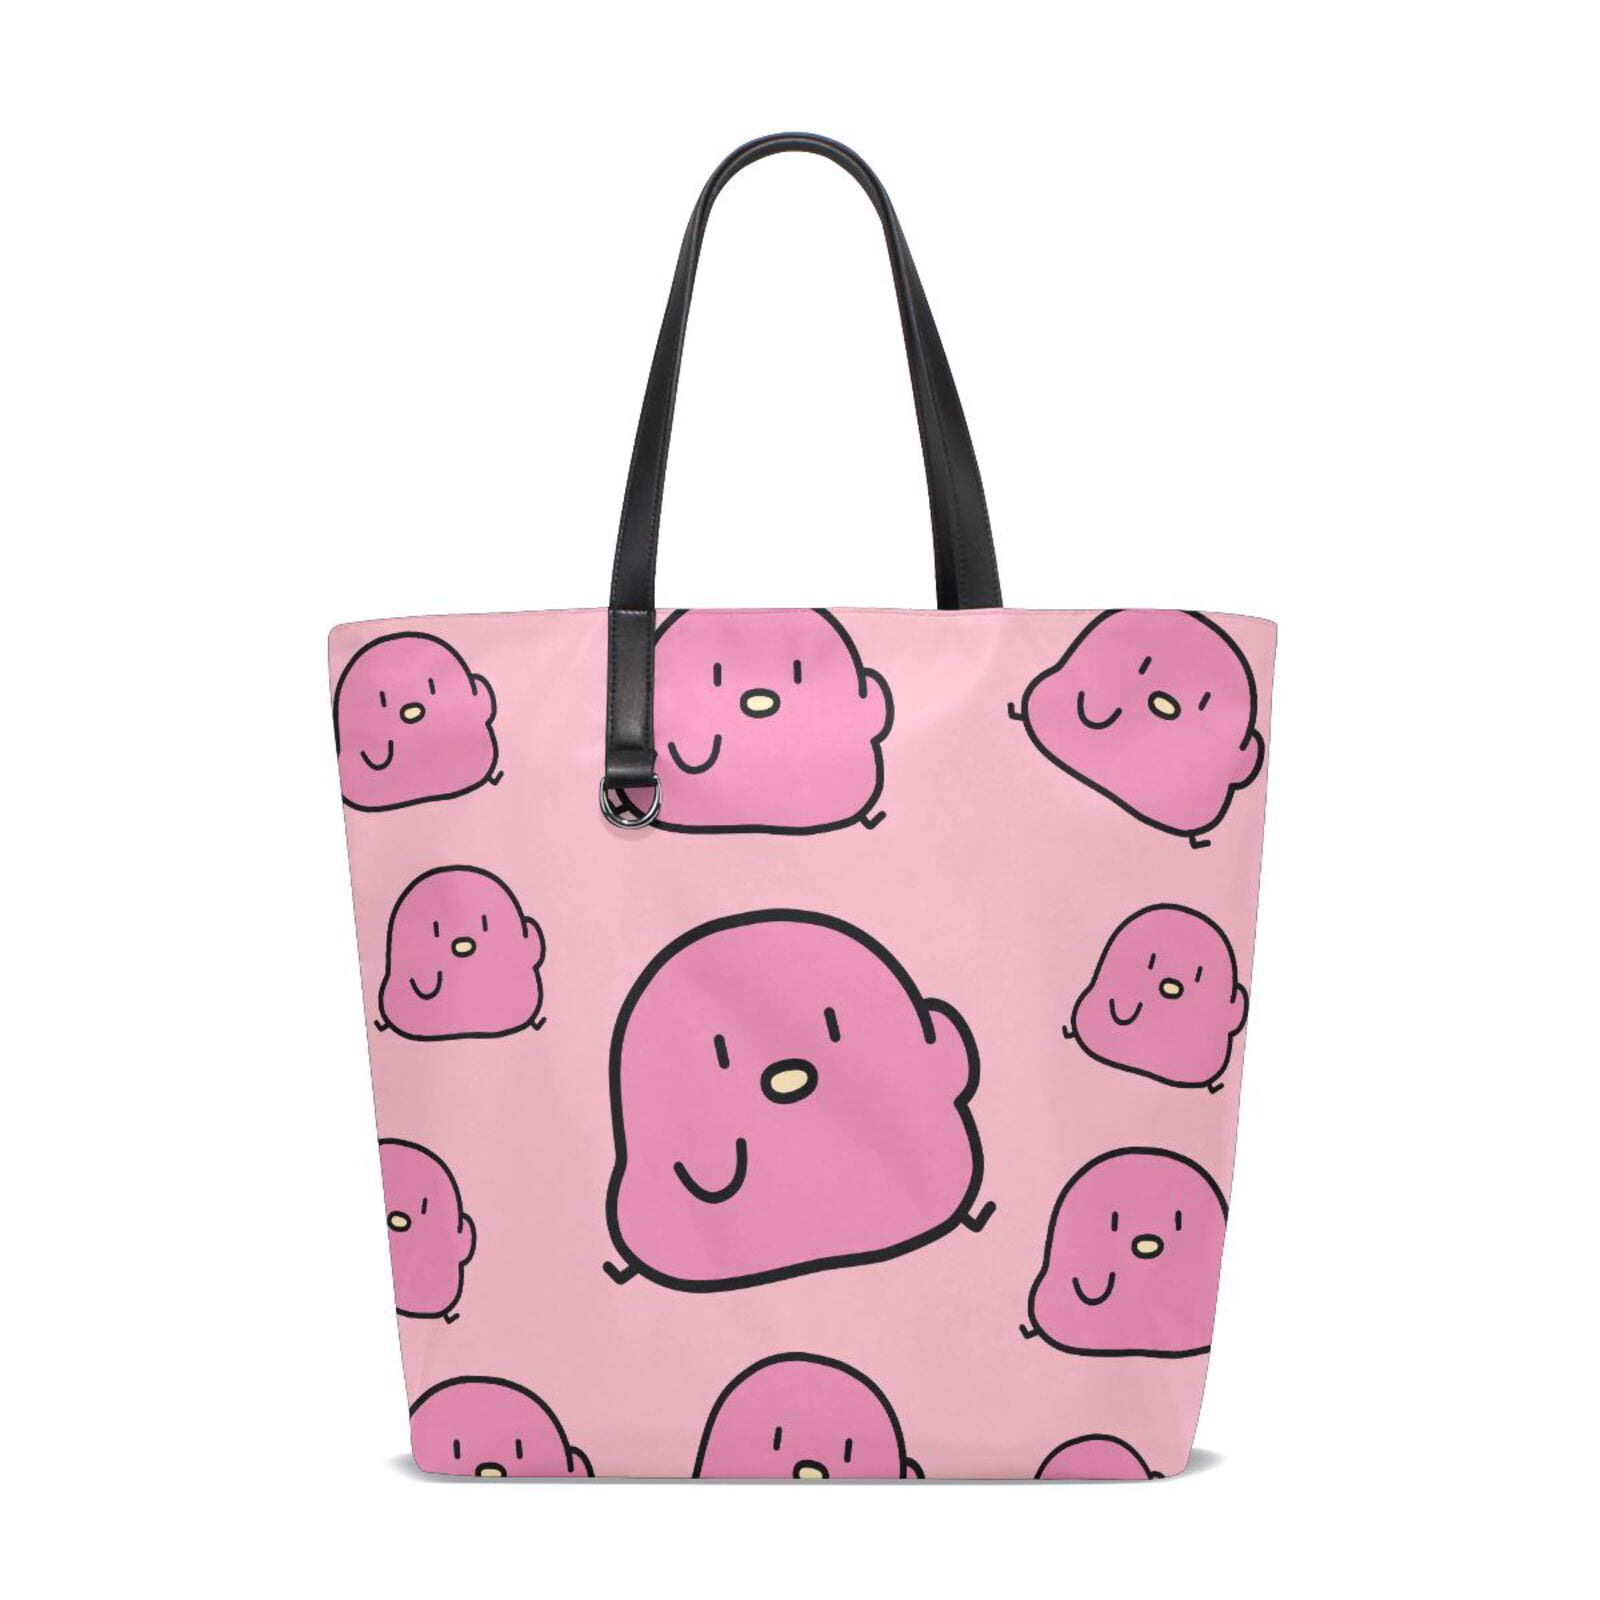 MOLES Cute Eggs Reusable Shopping Bags Women Foldable Tote Bag Portable ...